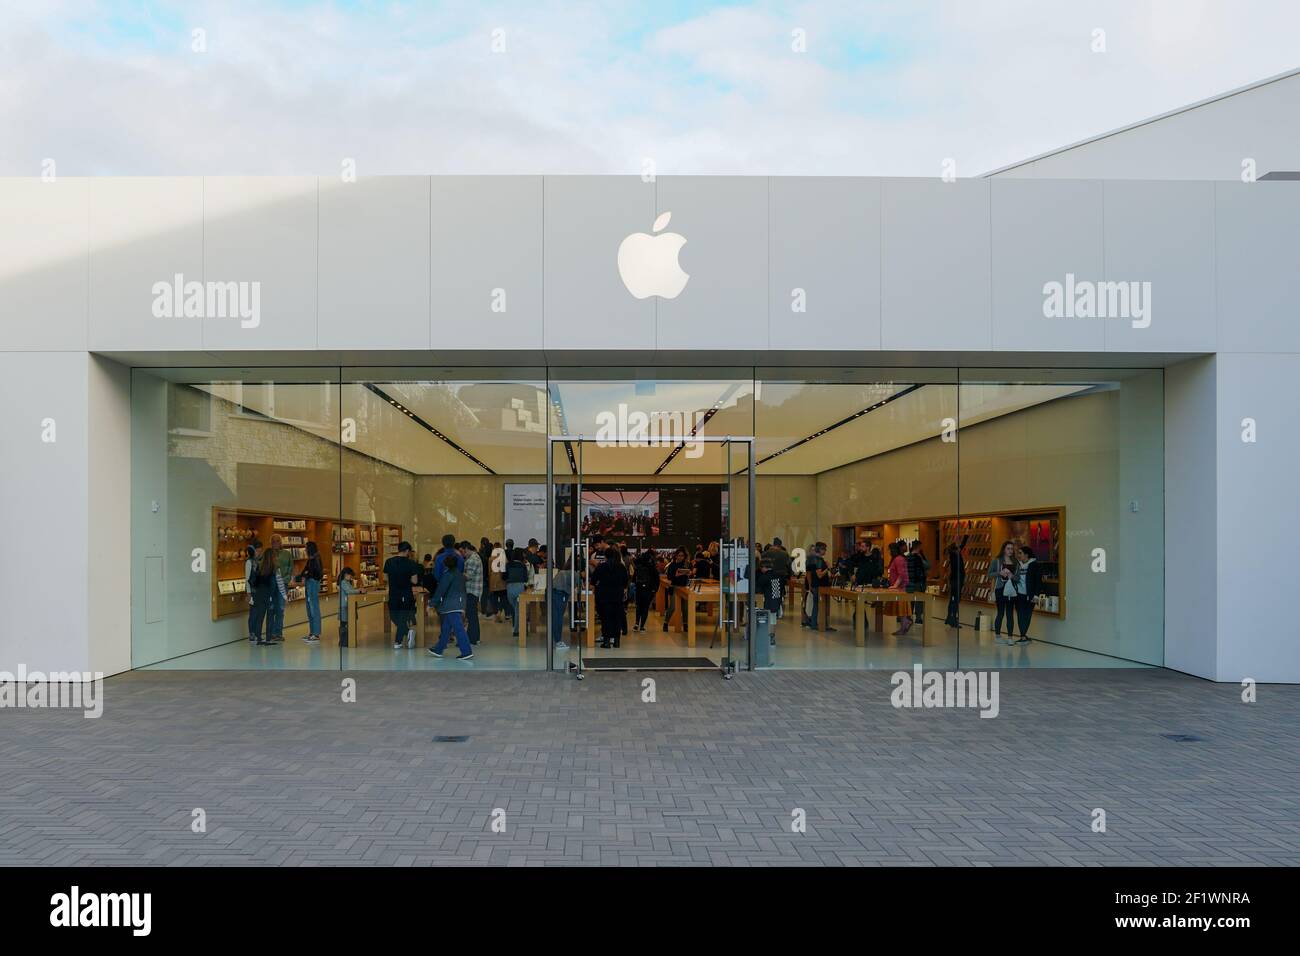 Apple-Einzelhandelsgeschäft, das iPhones, iPads und mehr in elegant gestalteten Räumen verkauft. Stockfoto